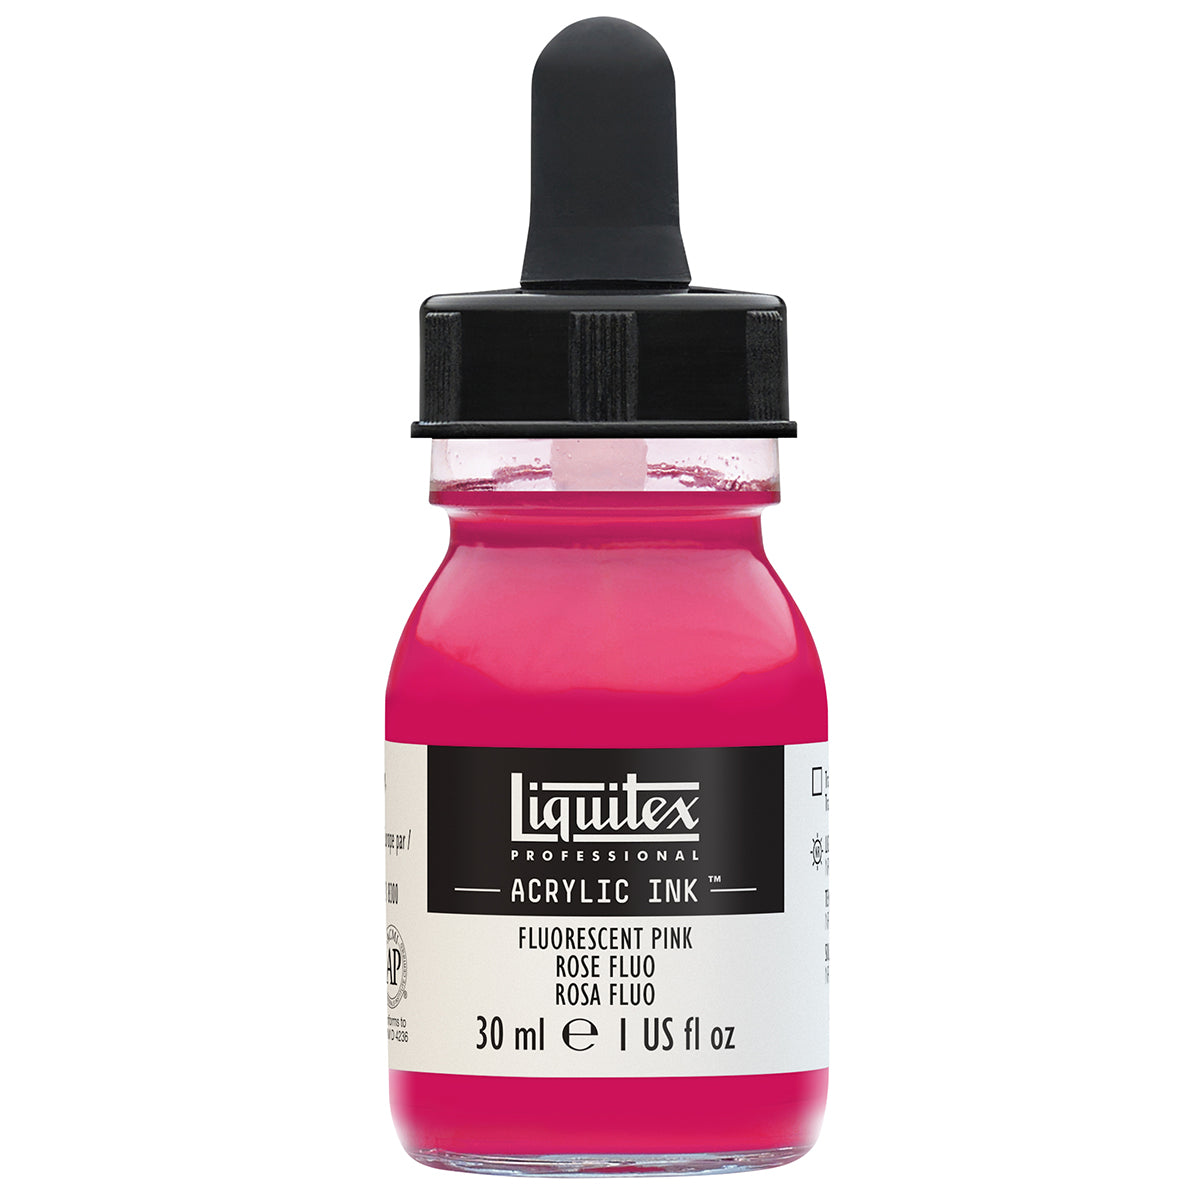 Liquitex-inchiostro acrilico-30ml rosa fluorescente